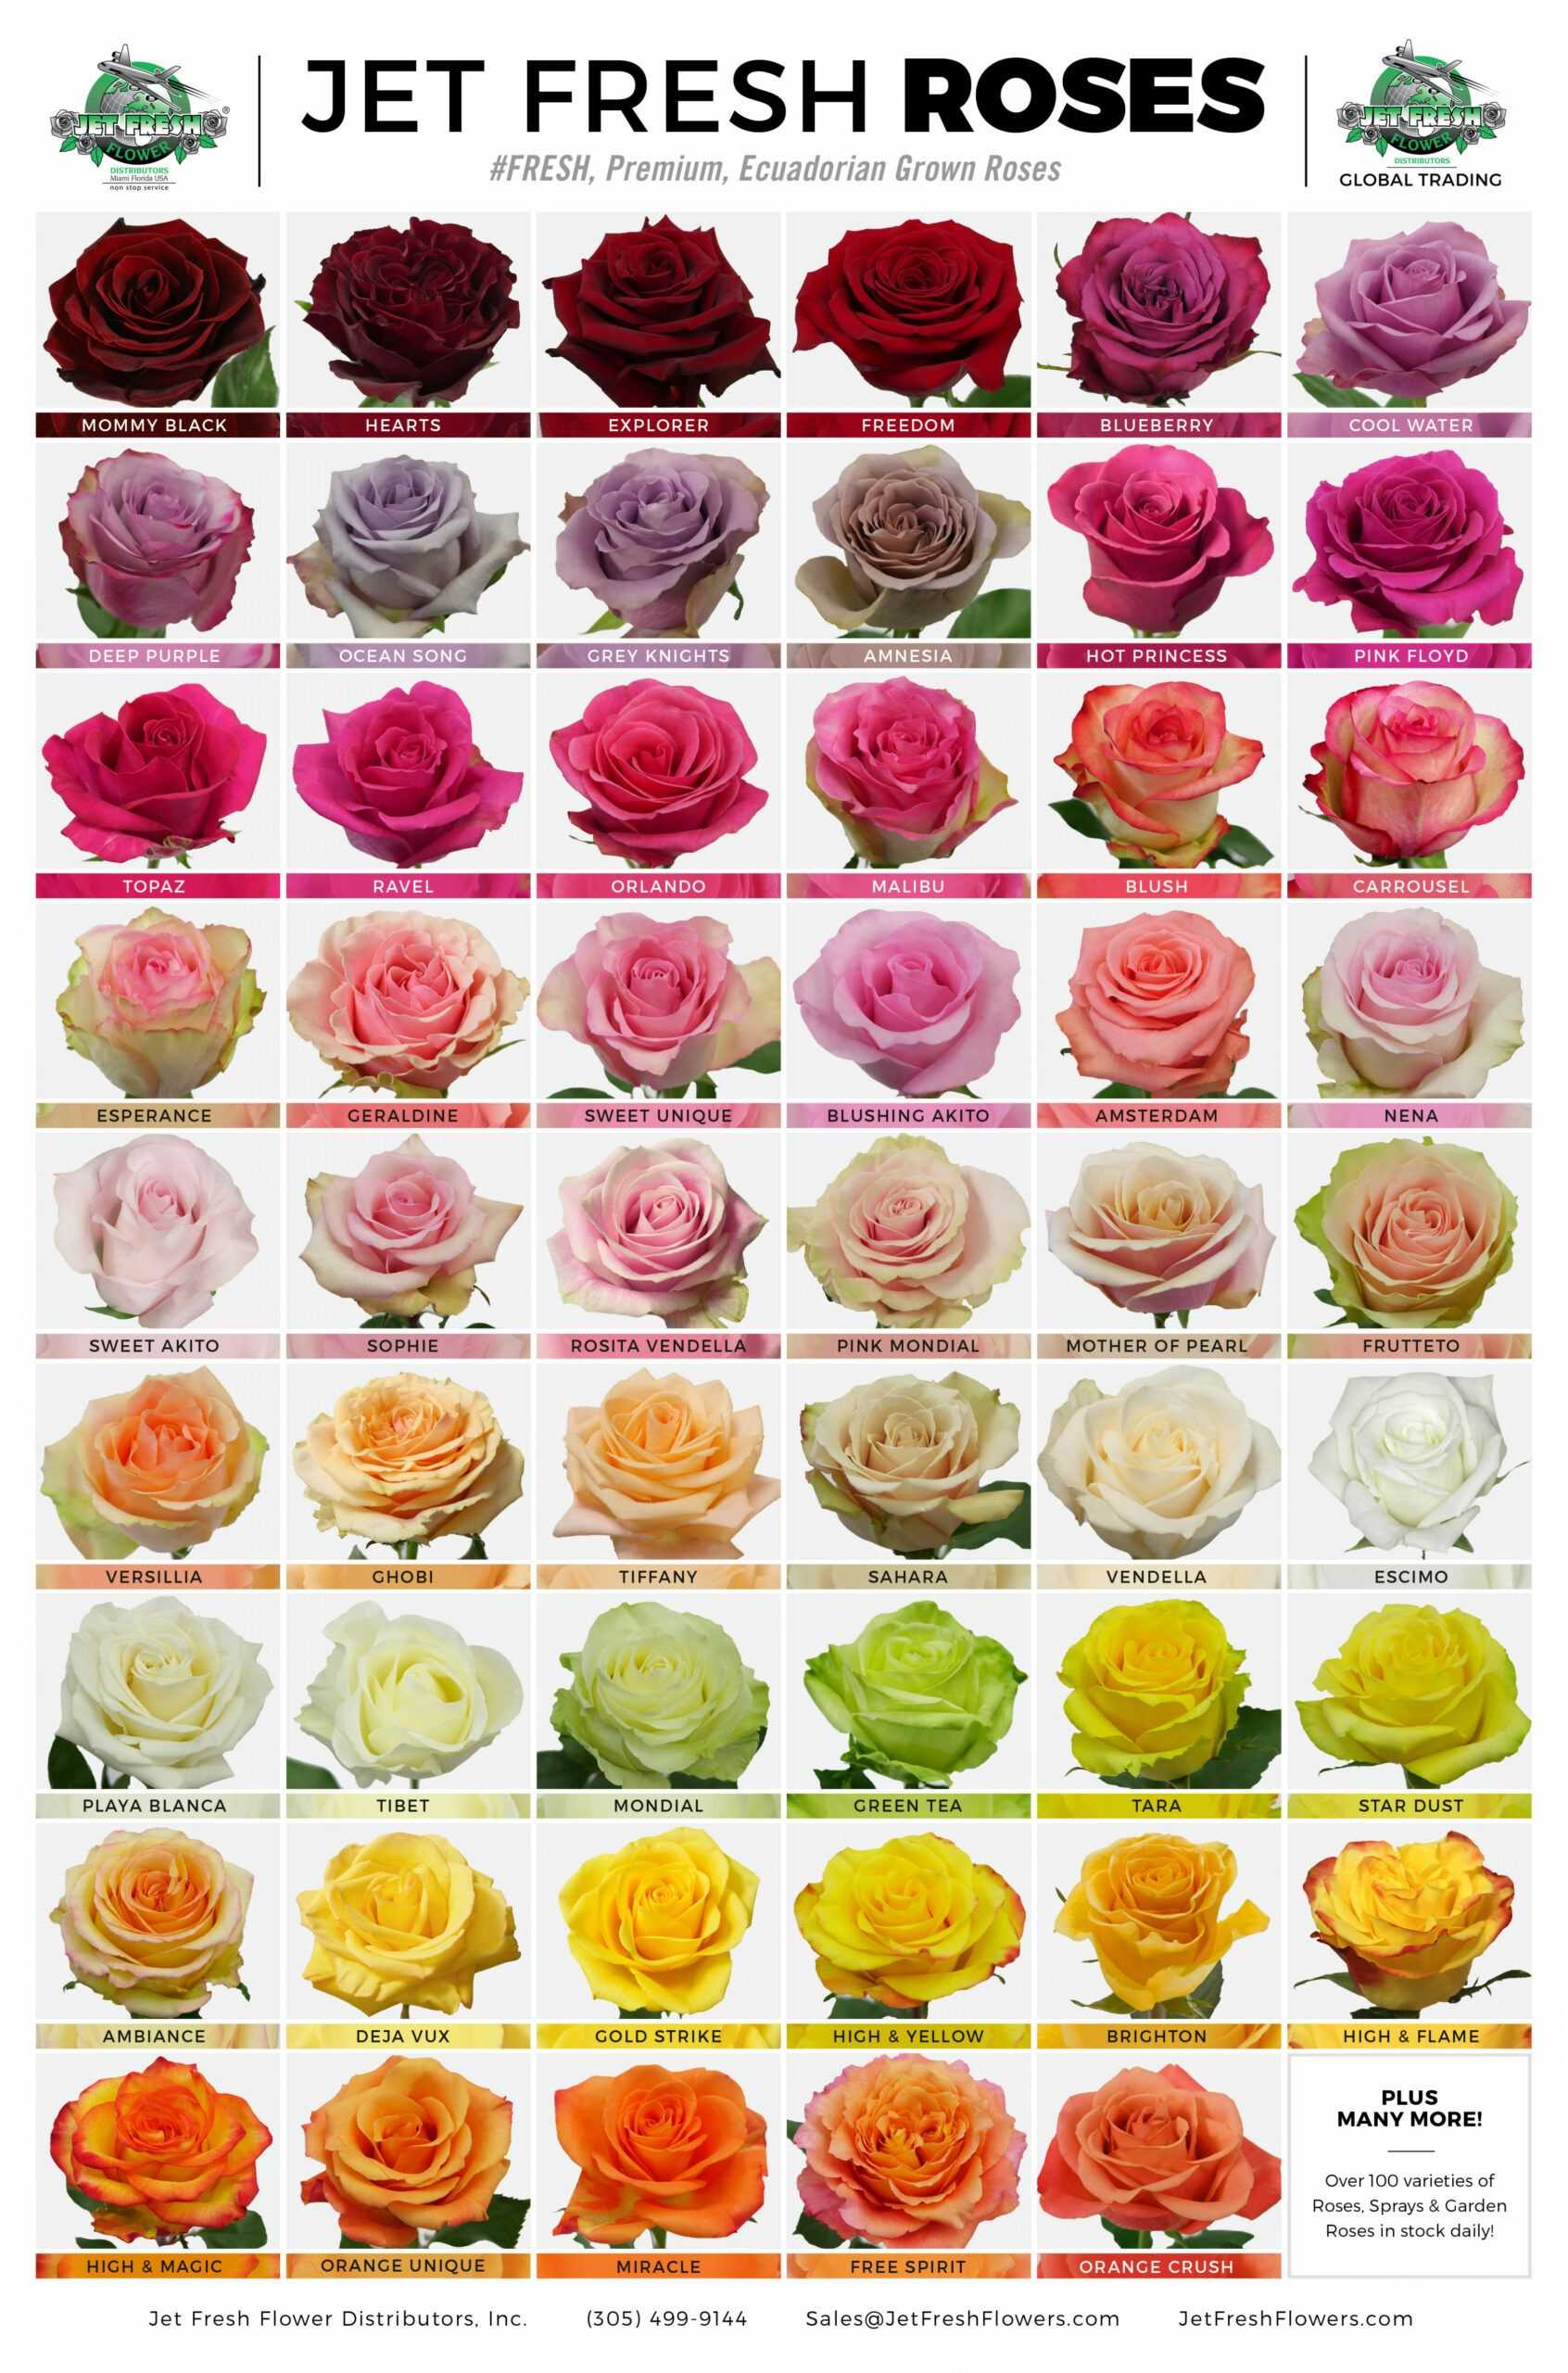 Виды садовых роз с фото и описанием все разновидности